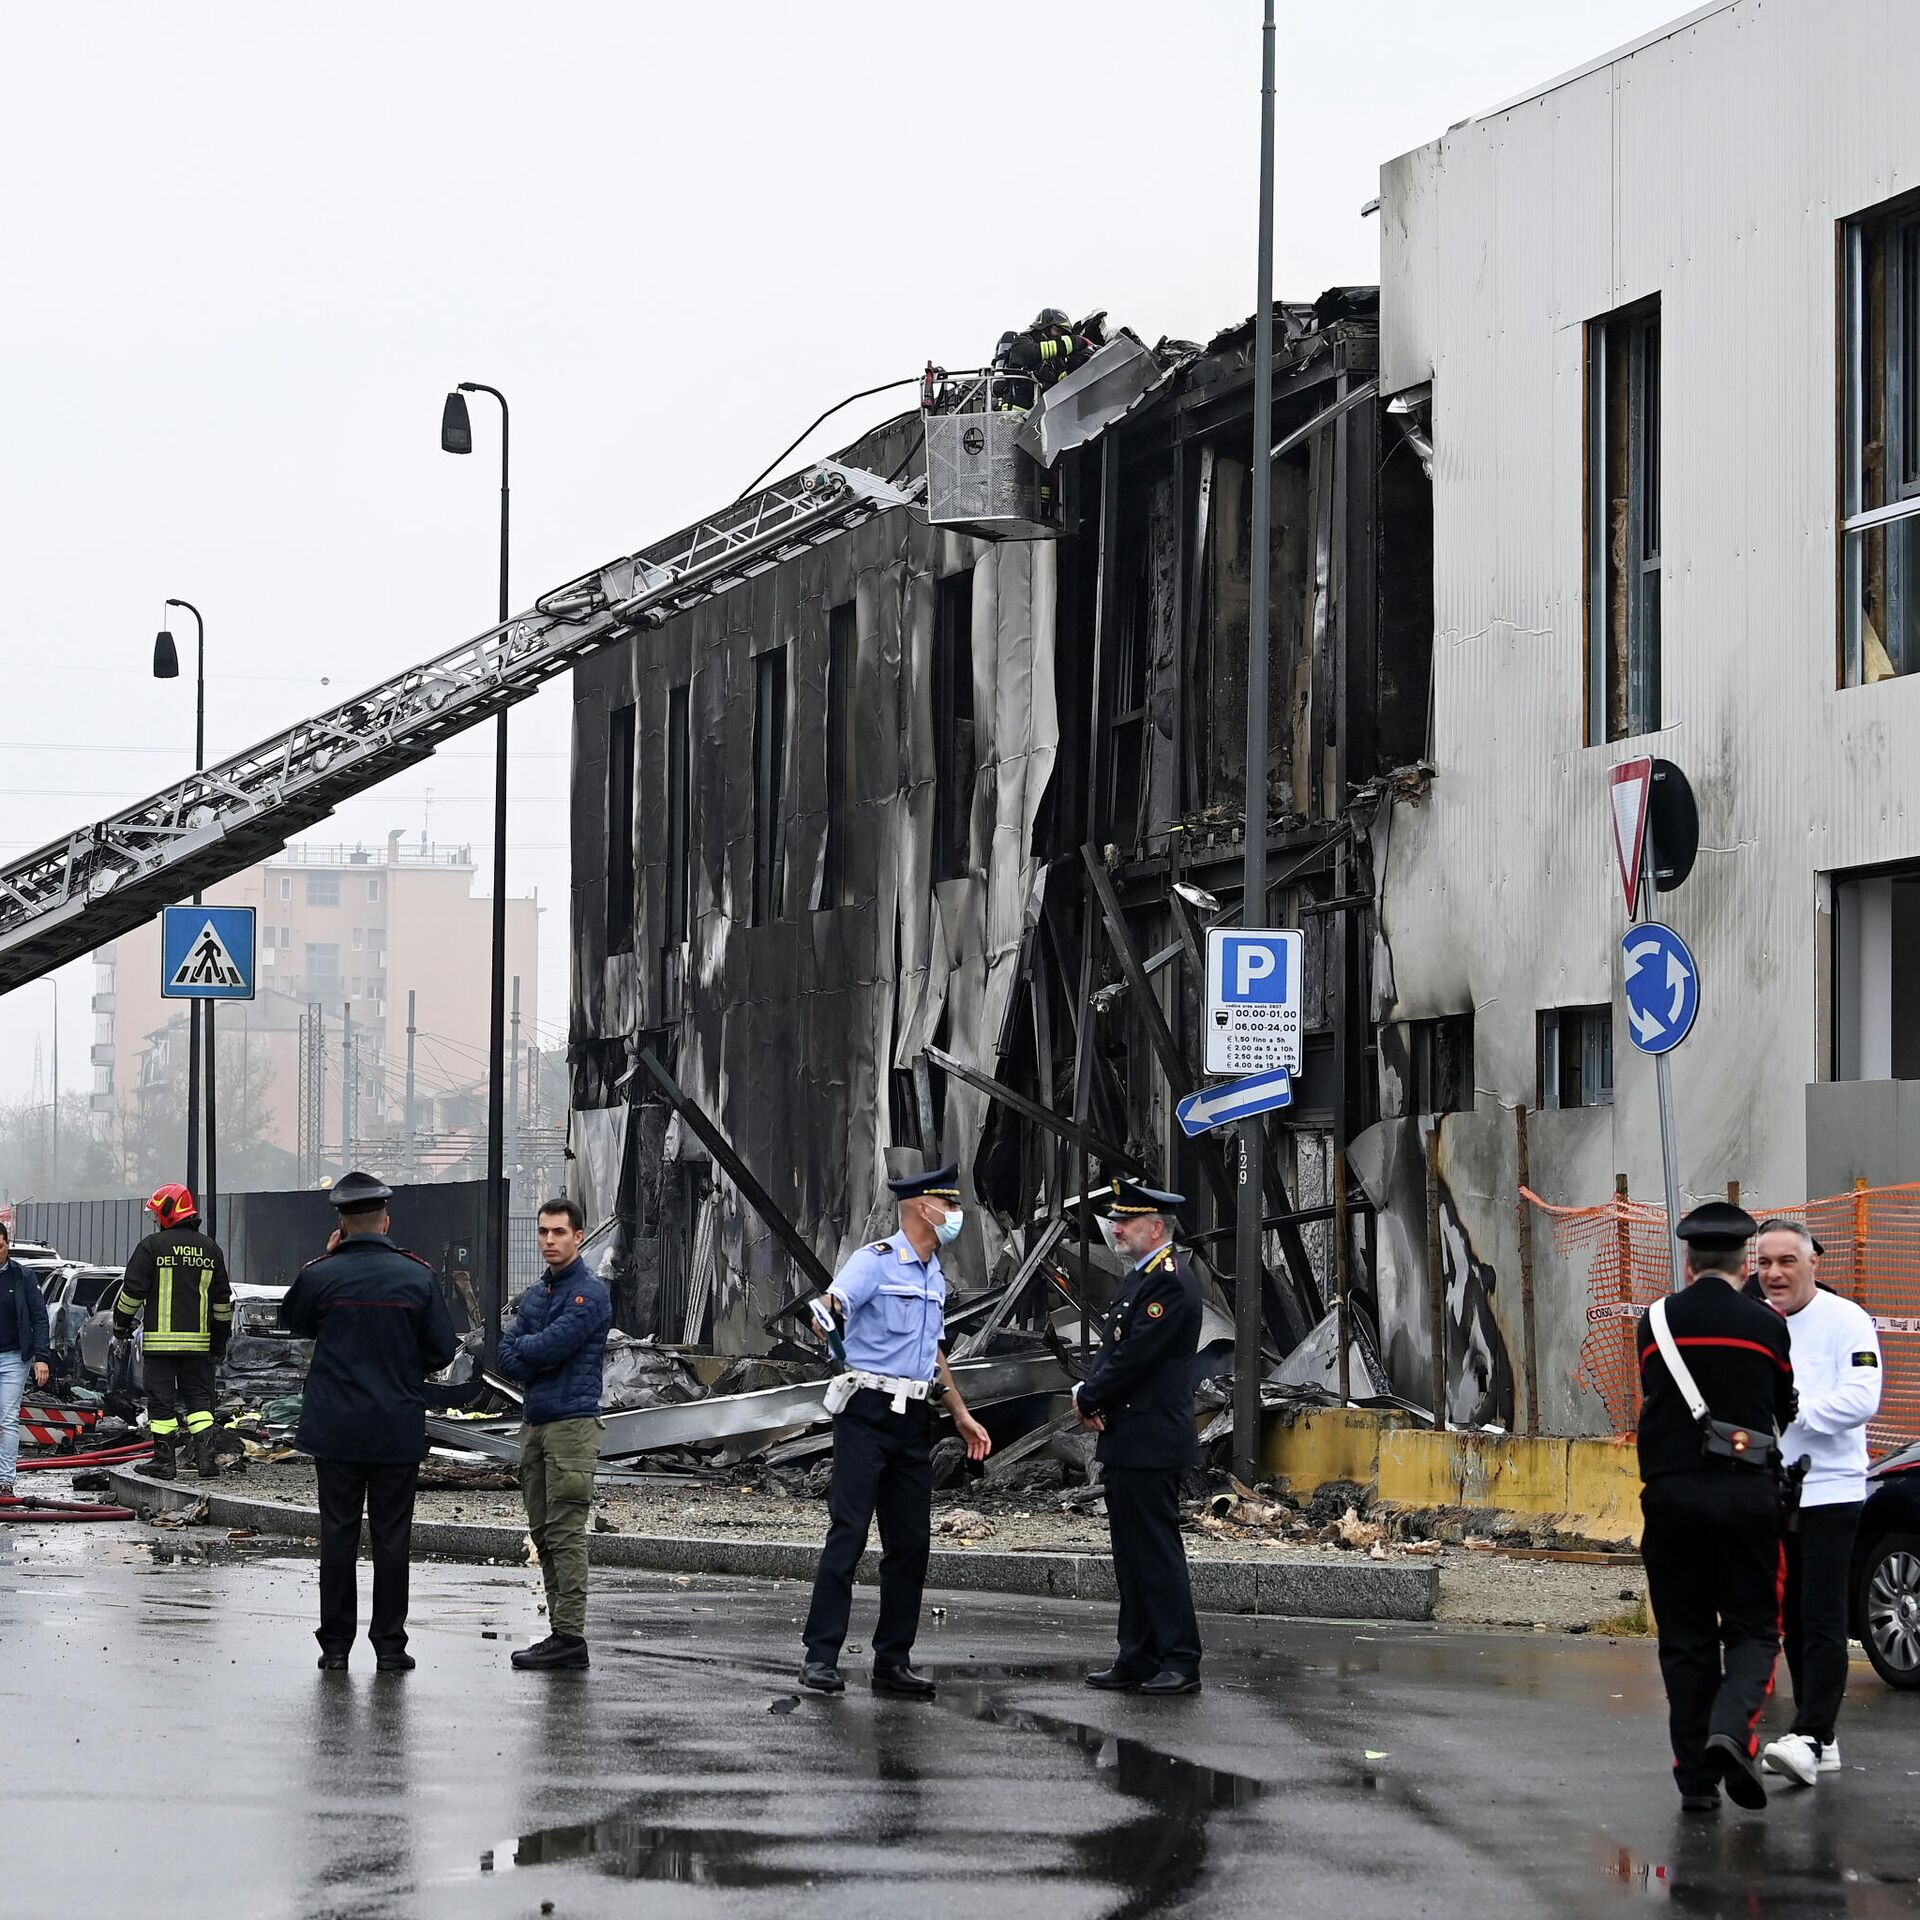 Модель разбилась в италии. Самолет врезался в здание. Падения Италия. Башня Пирелли в Милане катастрофа самолета.